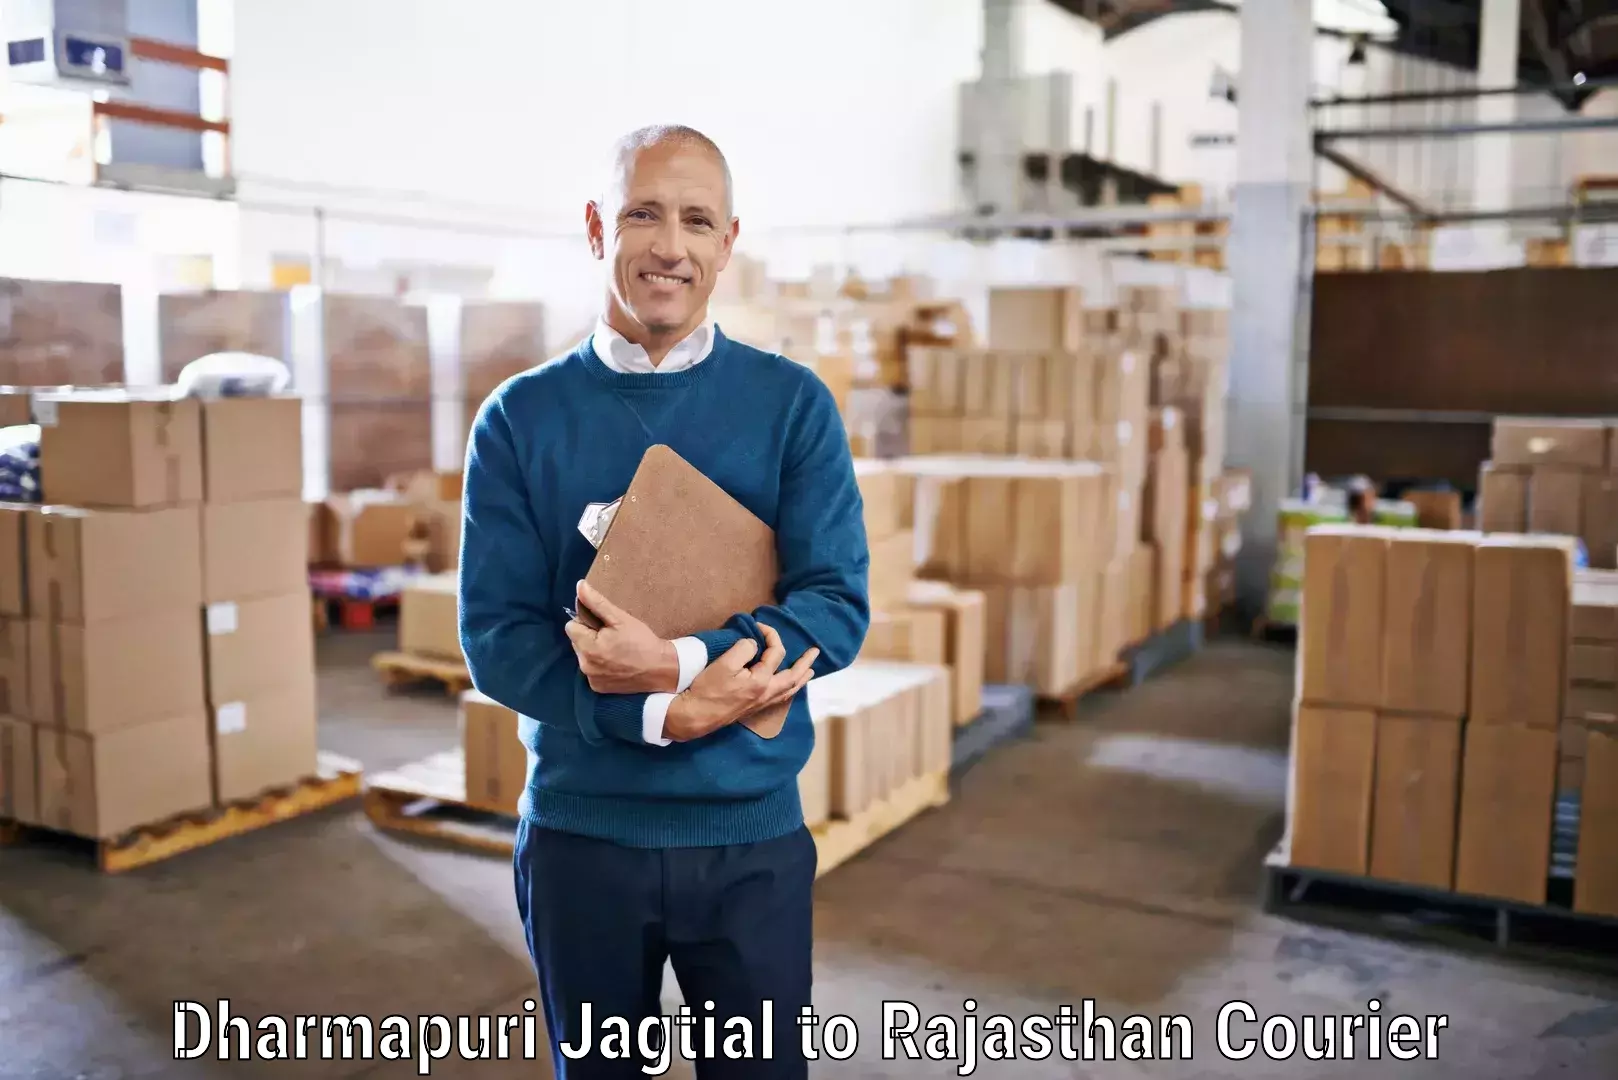 High-speed parcel service Dharmapuri Jagtial to Jhunjhunu